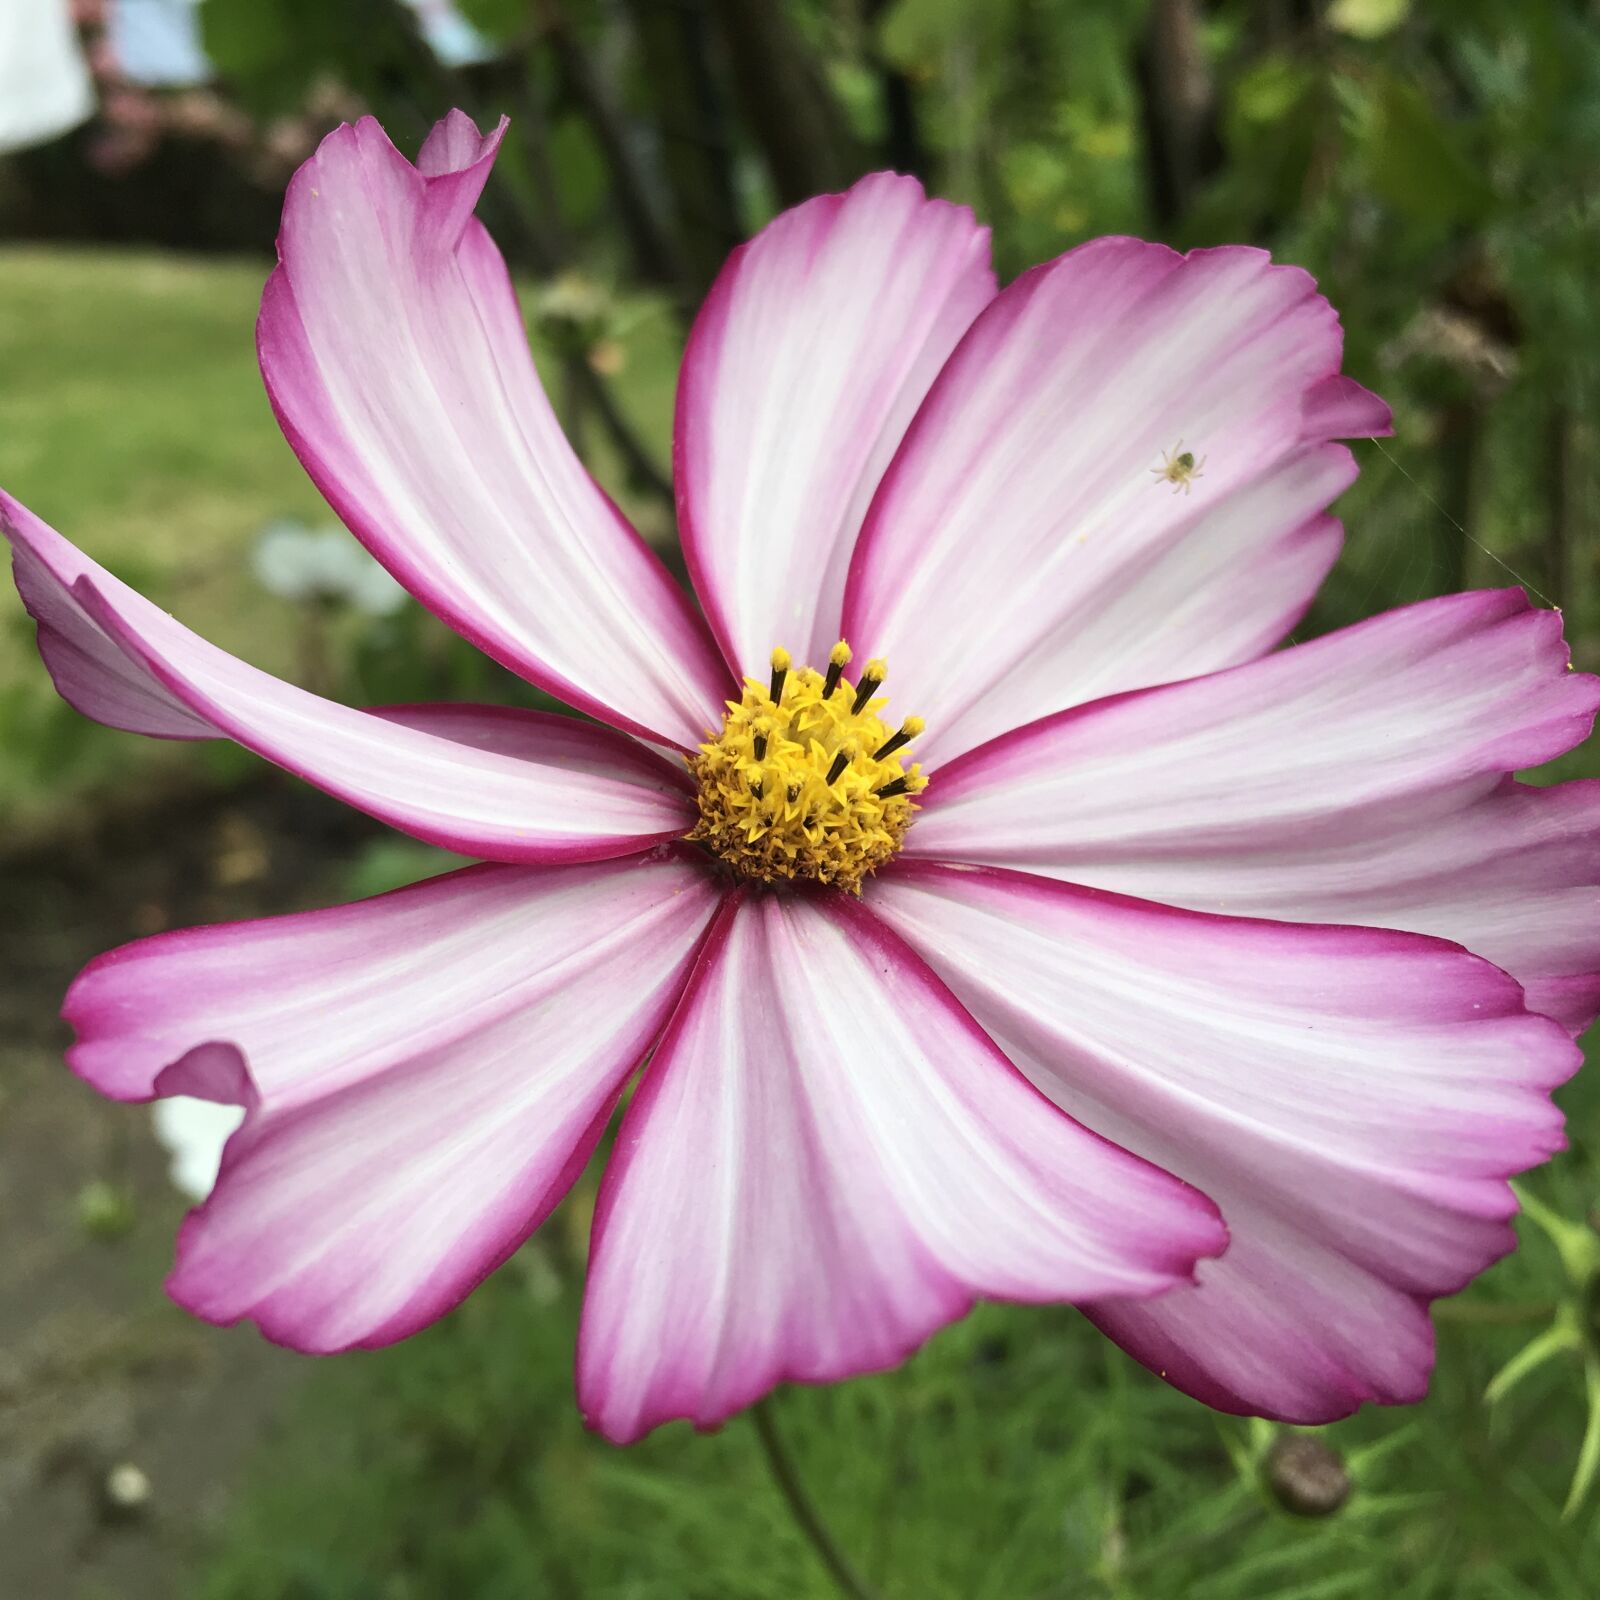 Apple iPad Pro sample photo. Flower, purple, garden photography